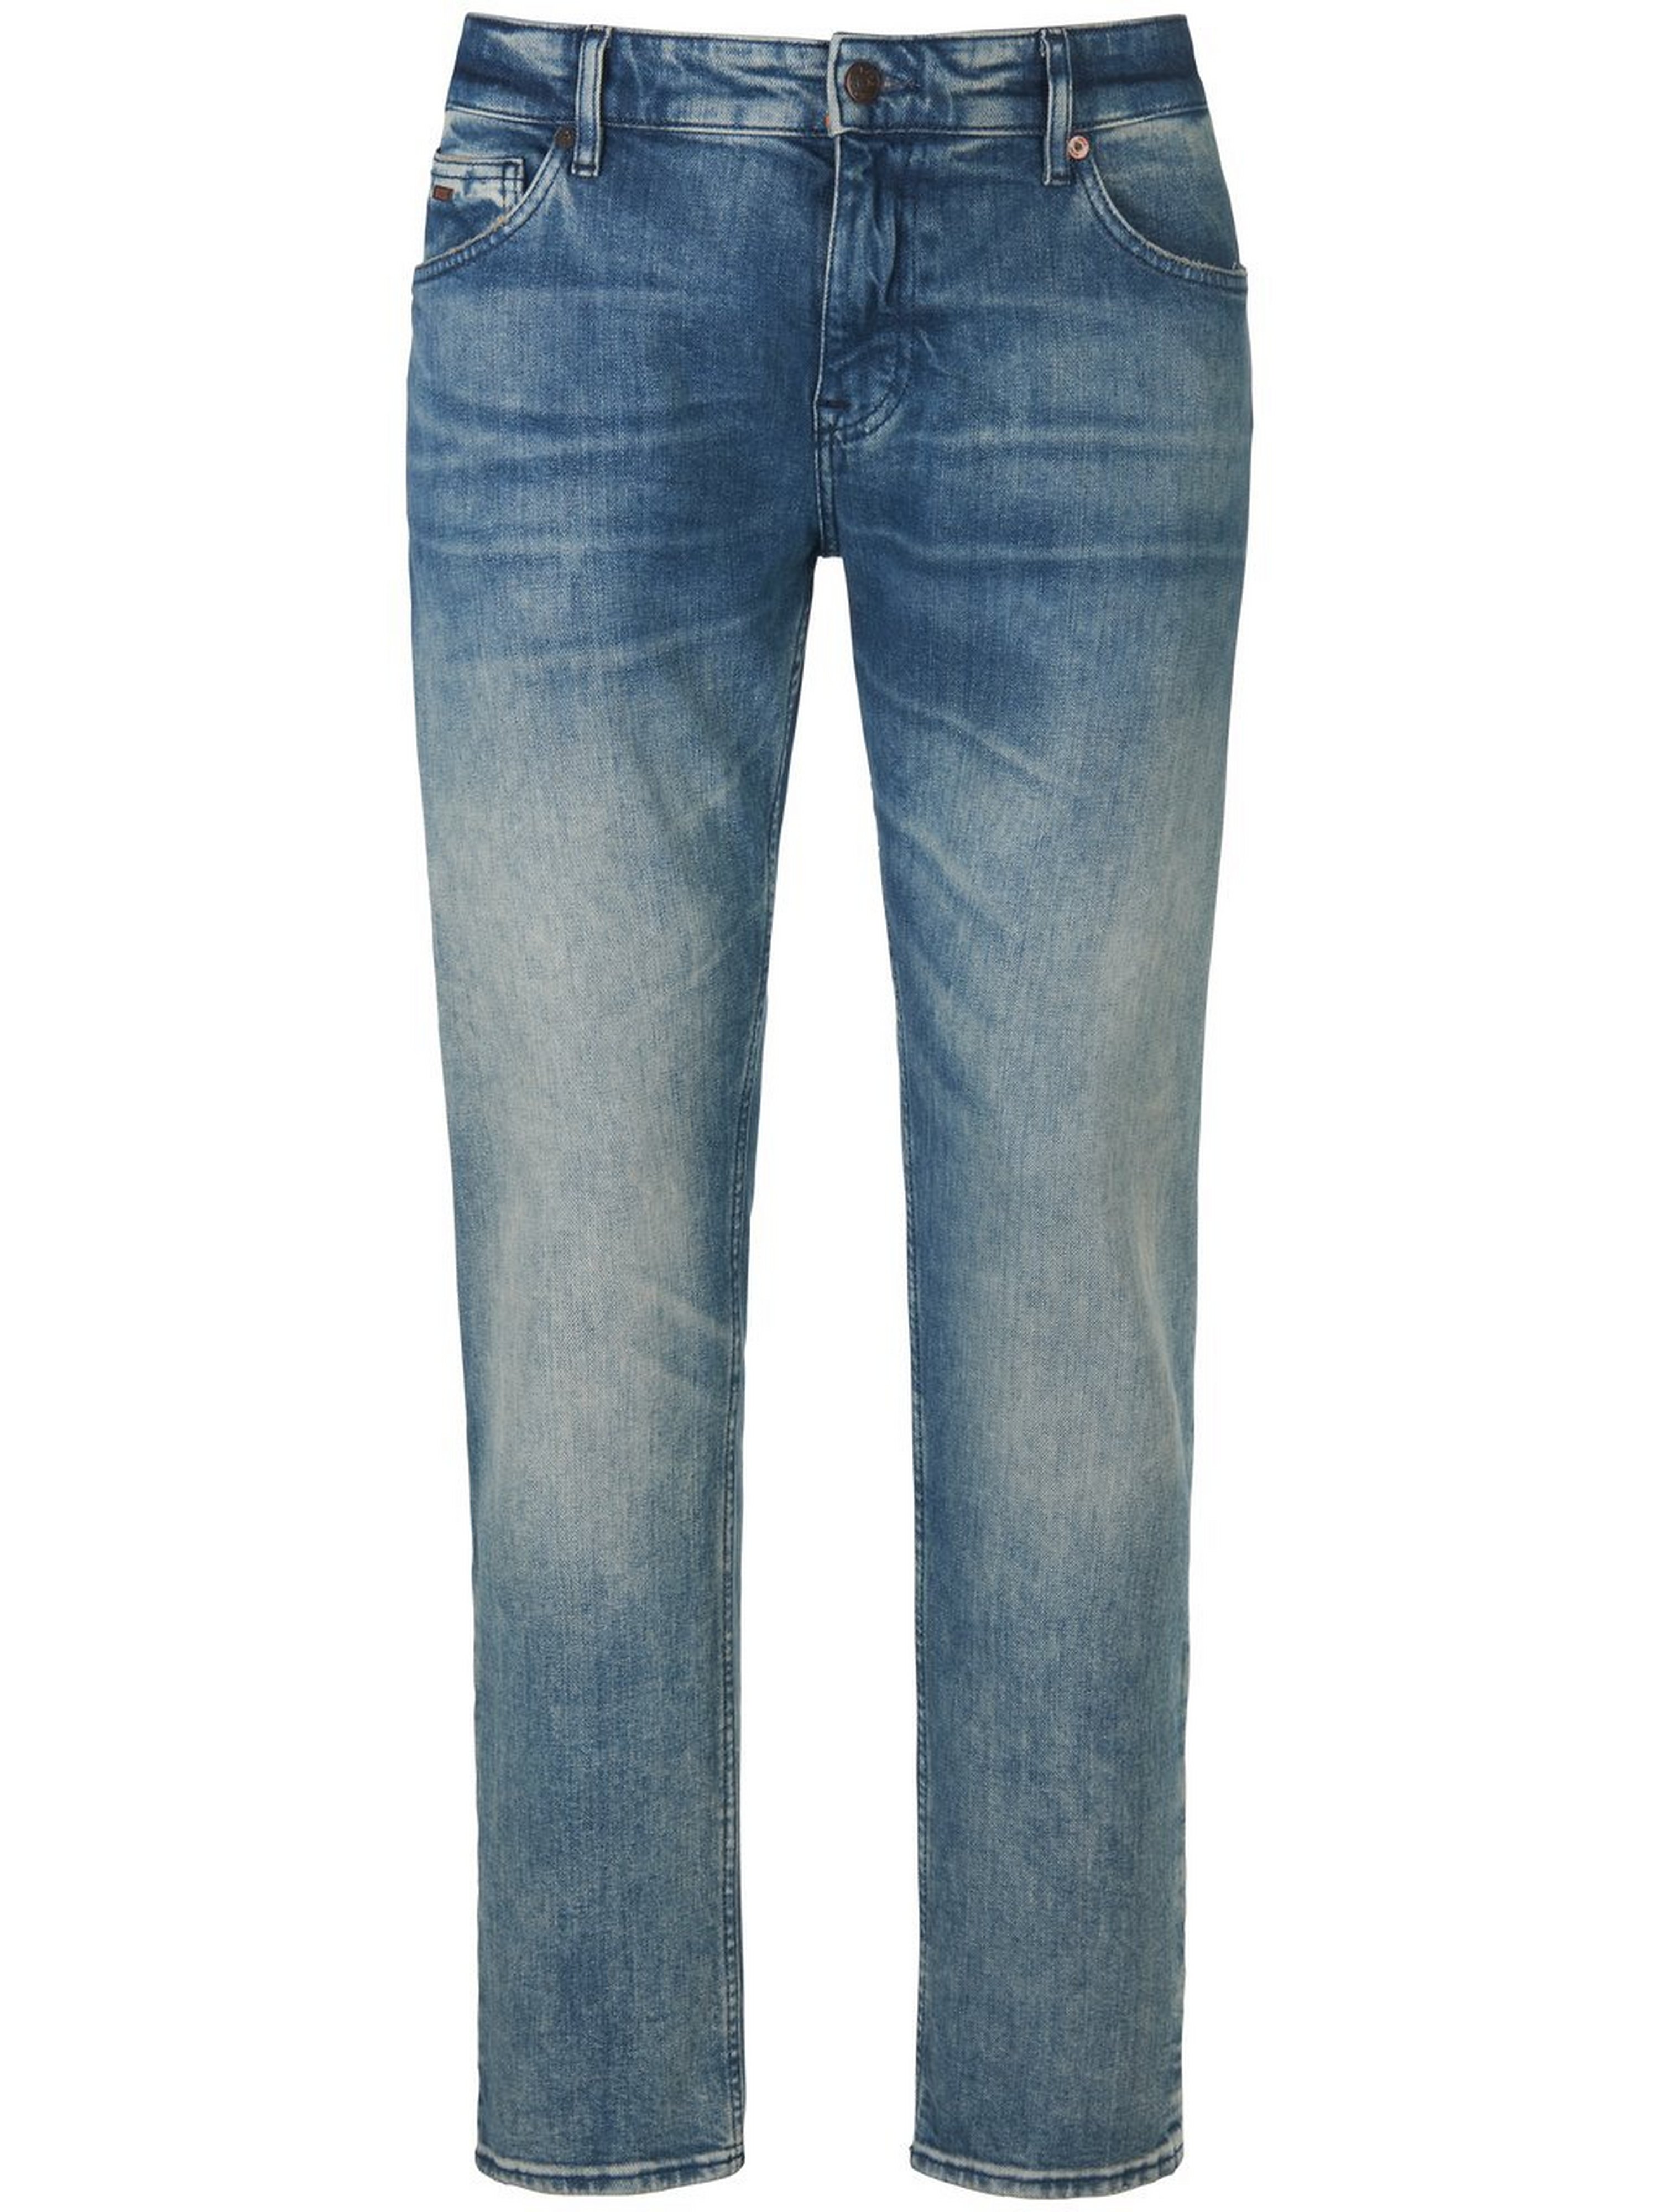 Jeans inchlengte 32 Van BOSS blauw